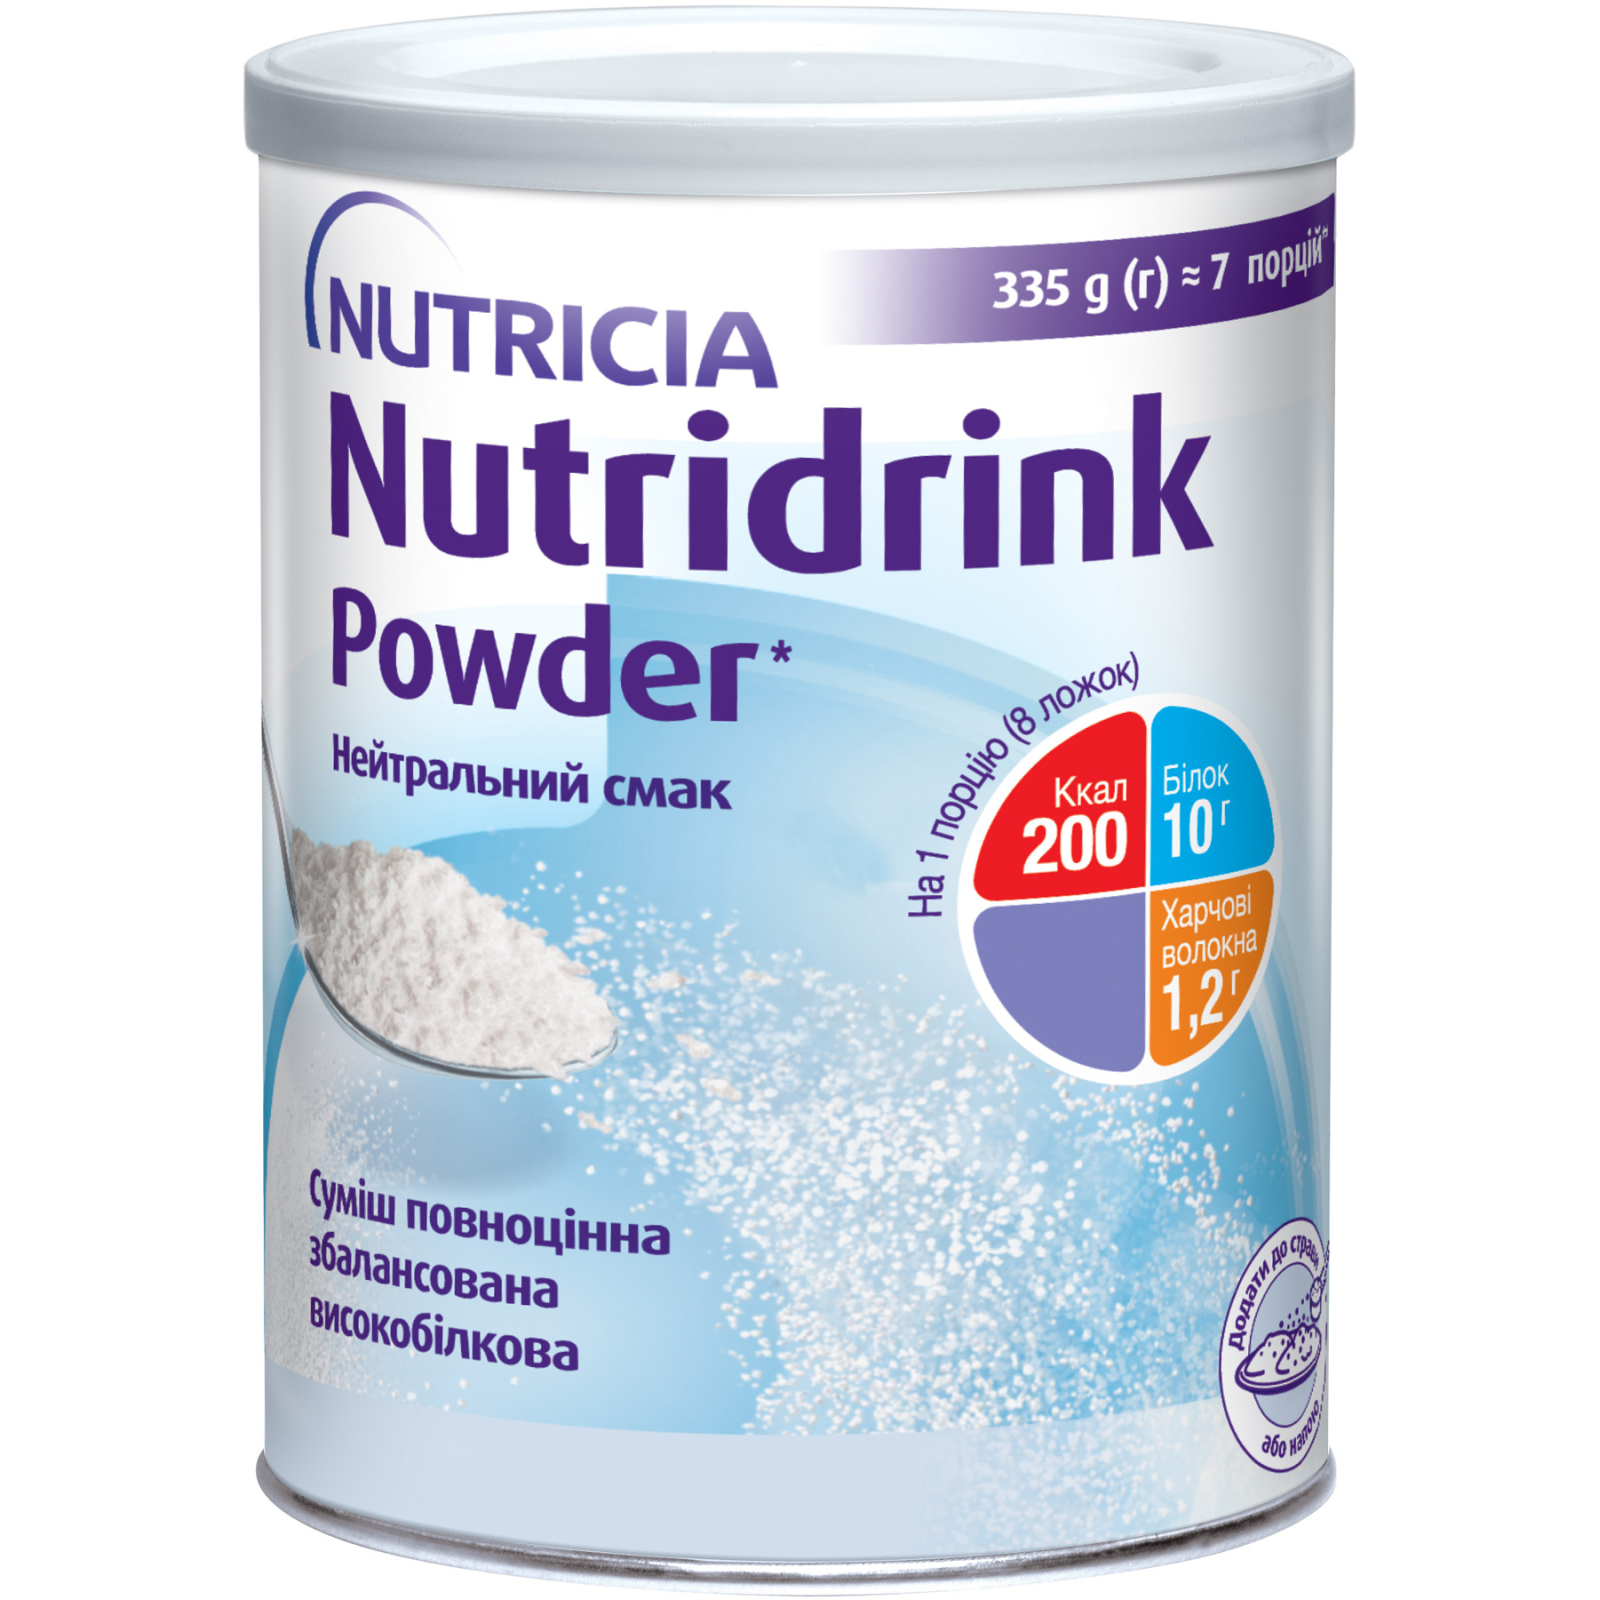 Ентеральне харчування Nutricia Nutridrink Powder Neutral з високим вмістом білка та енергії 335 г (4008976681441)